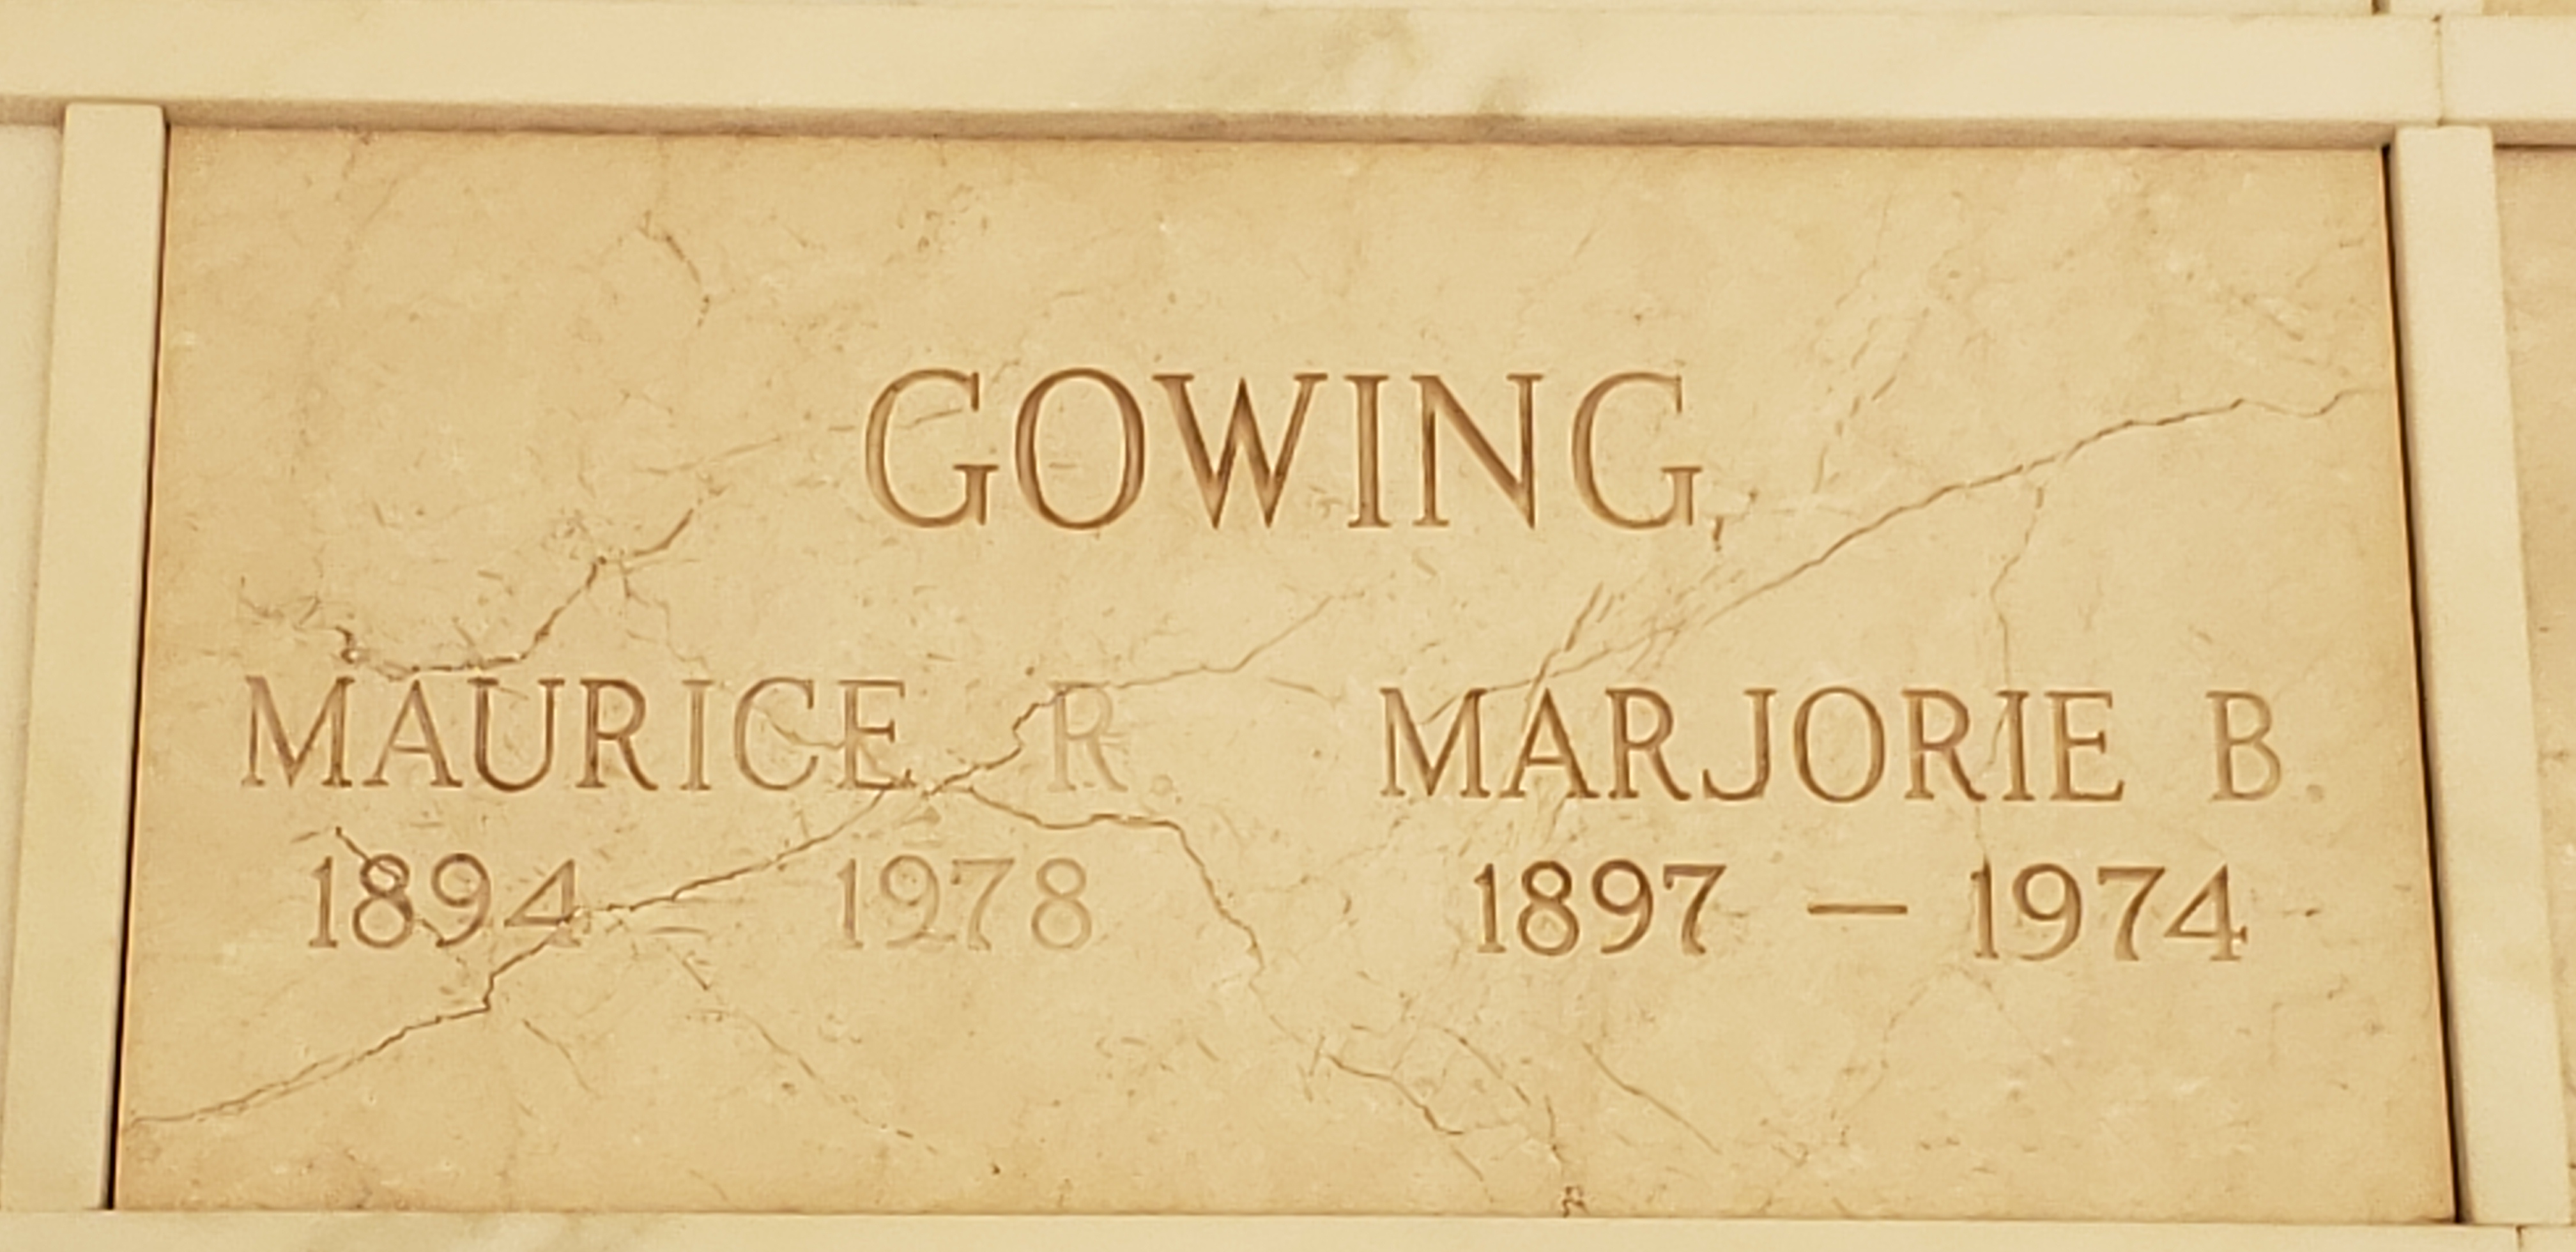 Marjorie B Gowing